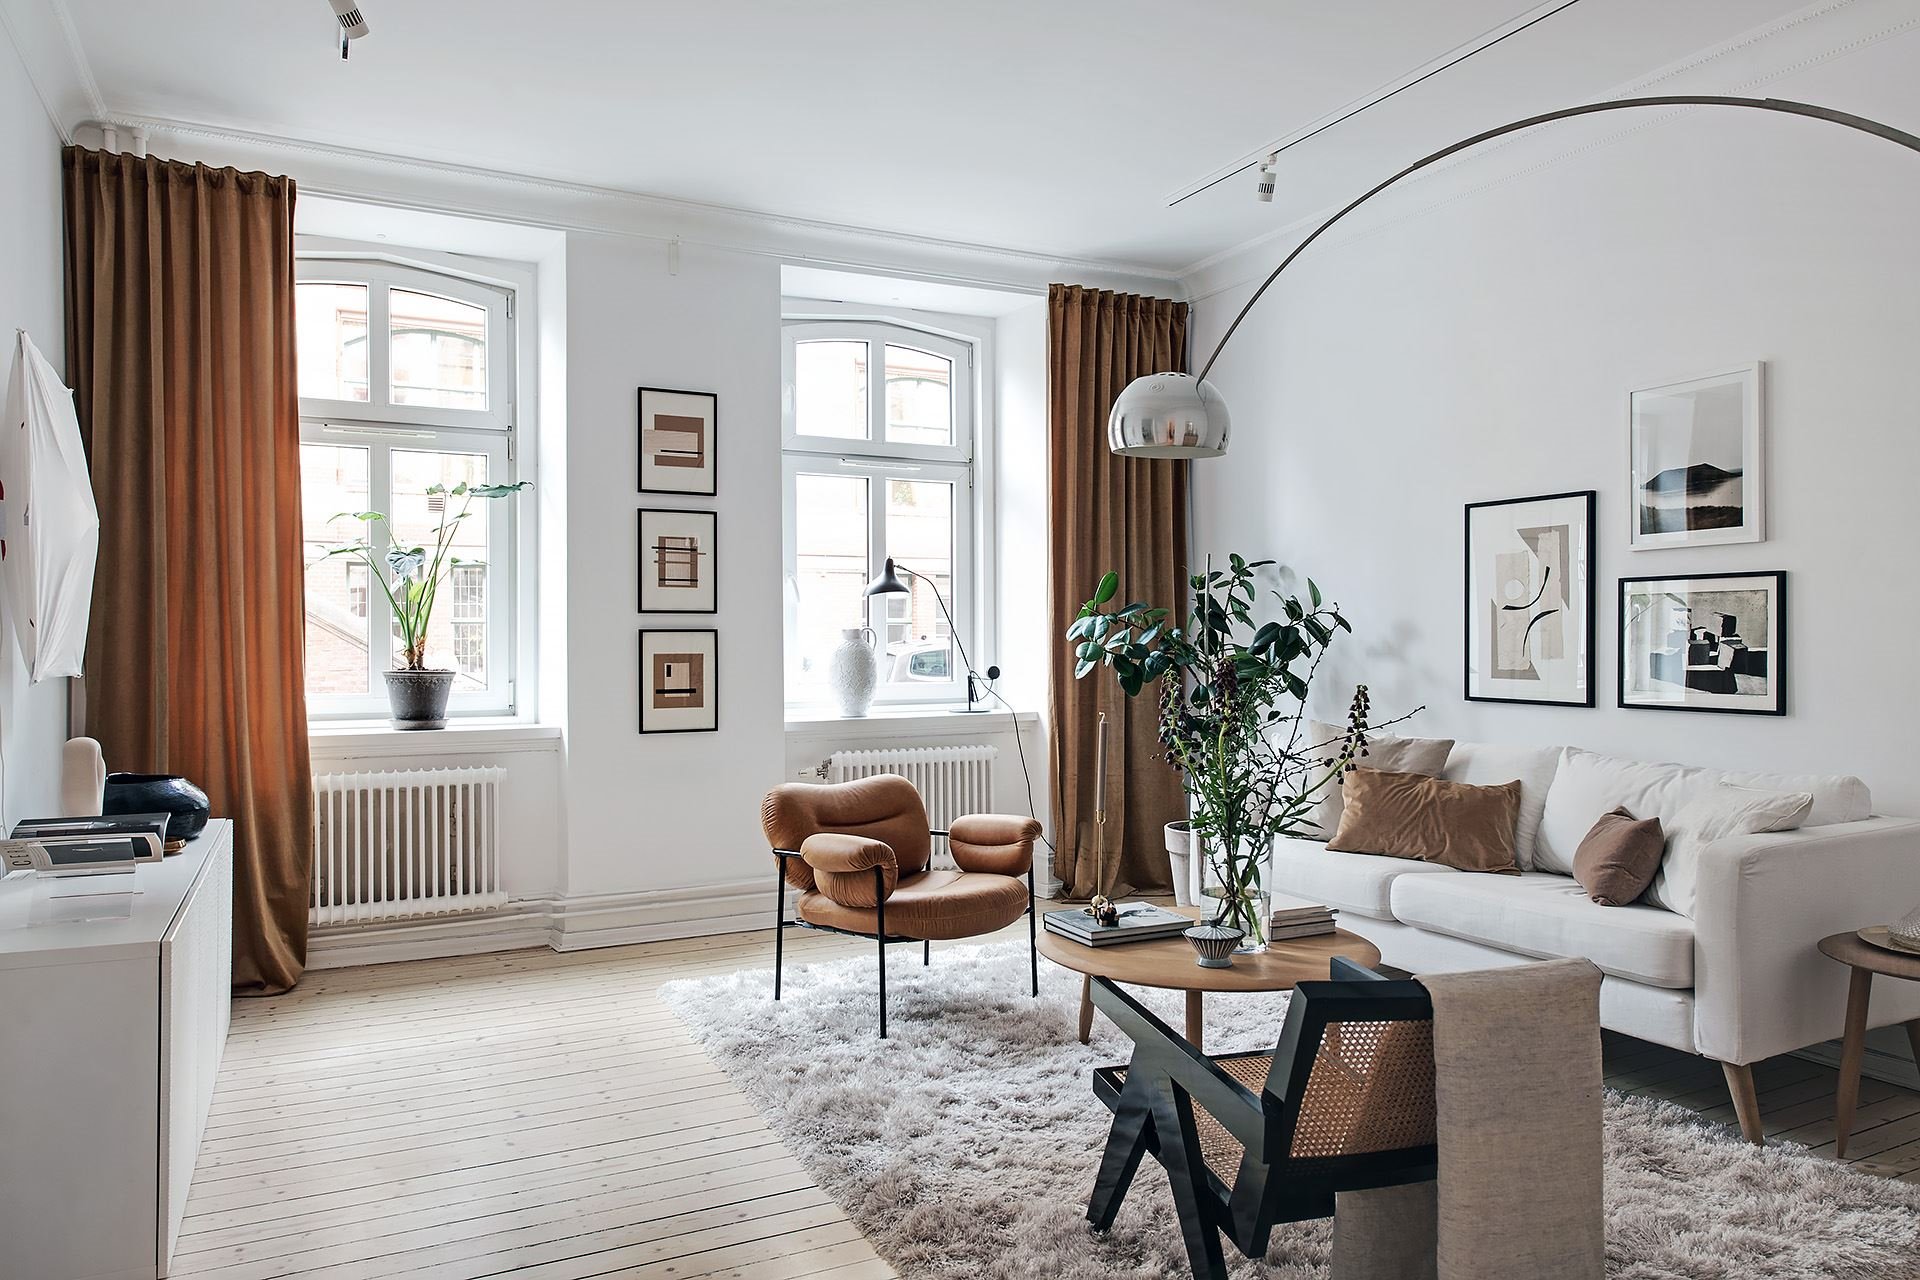 Piso con decoracion nordica moderna y paredes pintadas en color gris salon con cortinas